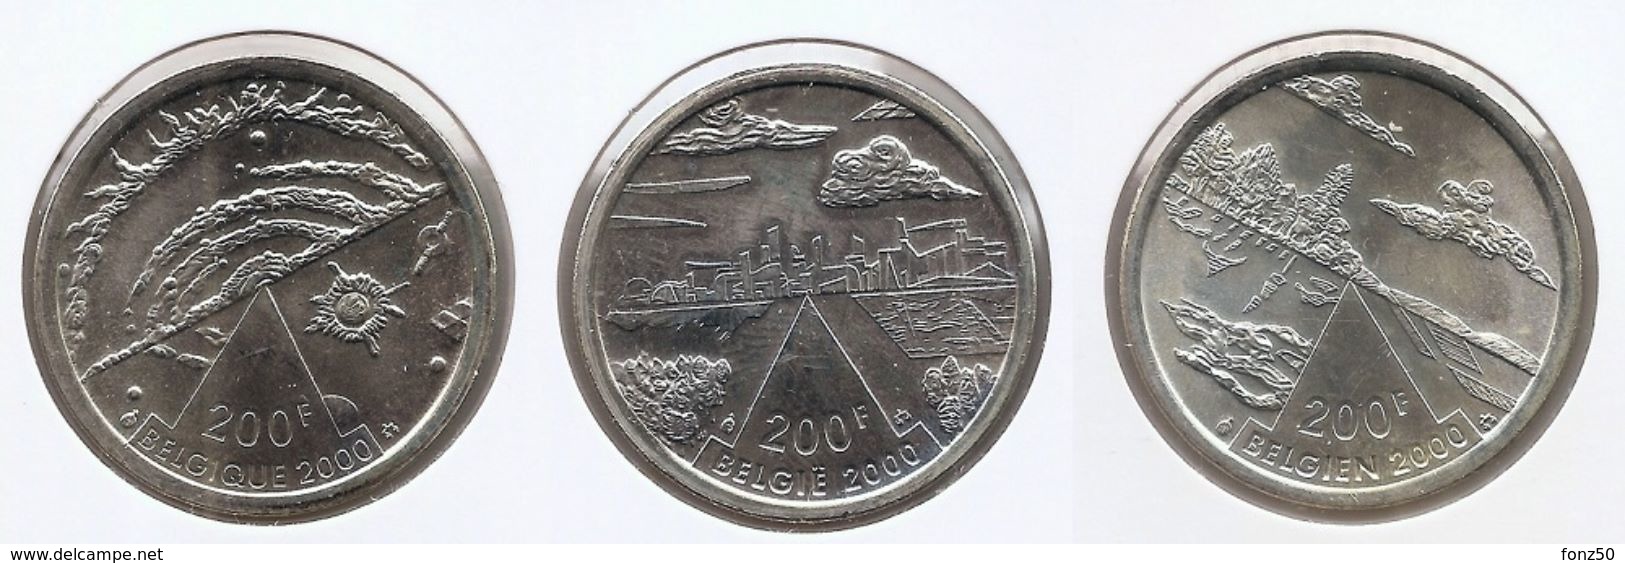 200 Frank 2000 Frans - Vlaams - Duits * MILLENNIUM * F D C * Nrs 9703/05 - 200 Francs